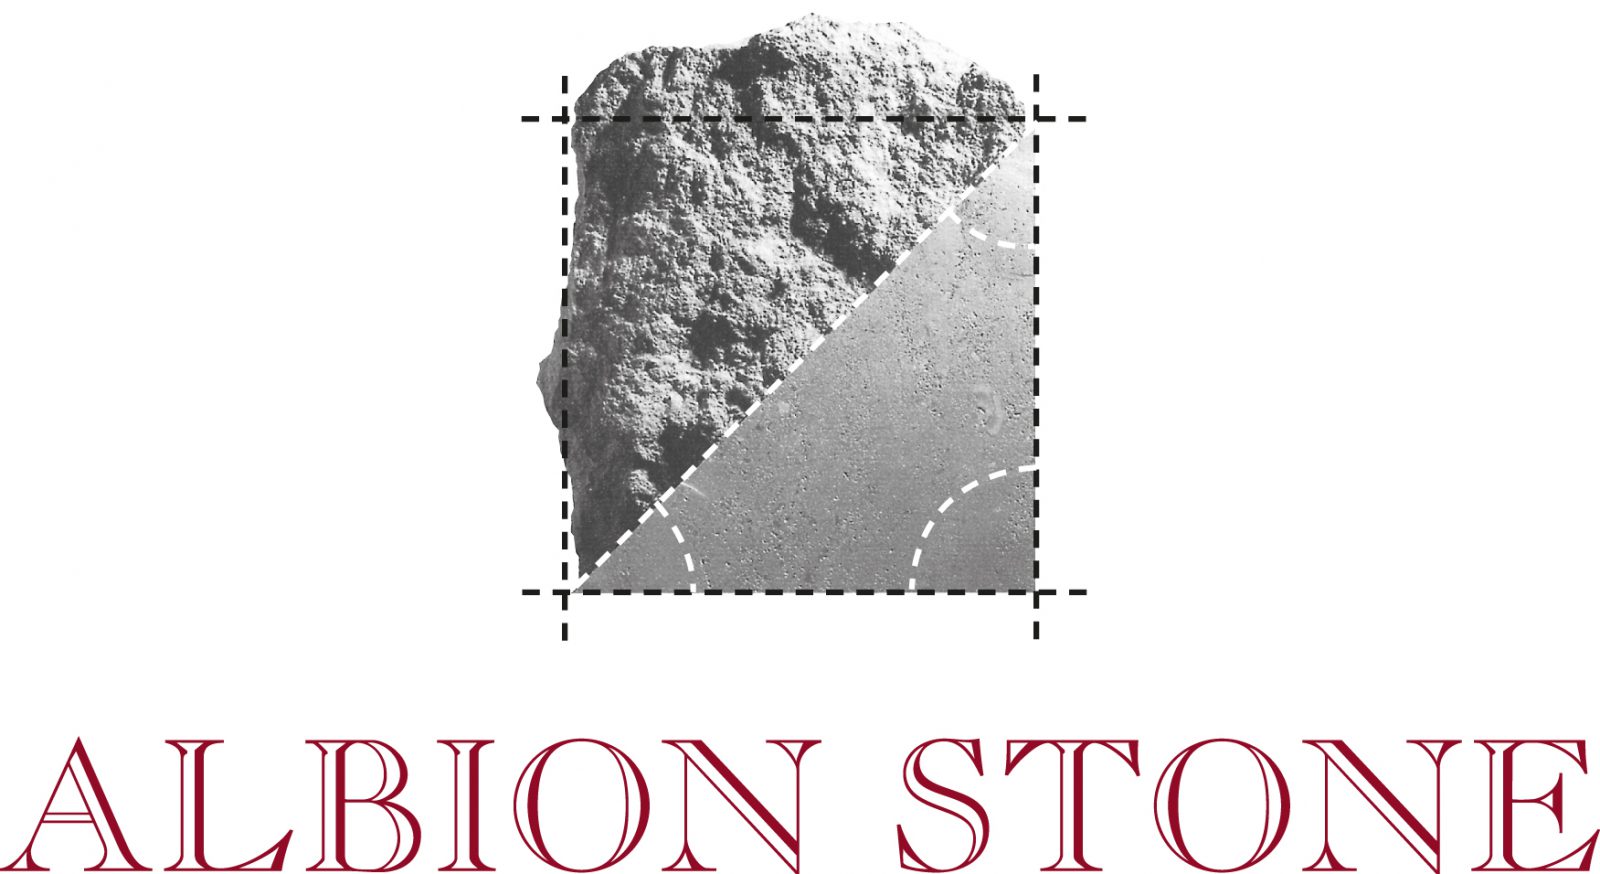 Логотип stone. Искусственный камень логотип. Камень лого. Каменный логотип. Лаконичный логотип камень.